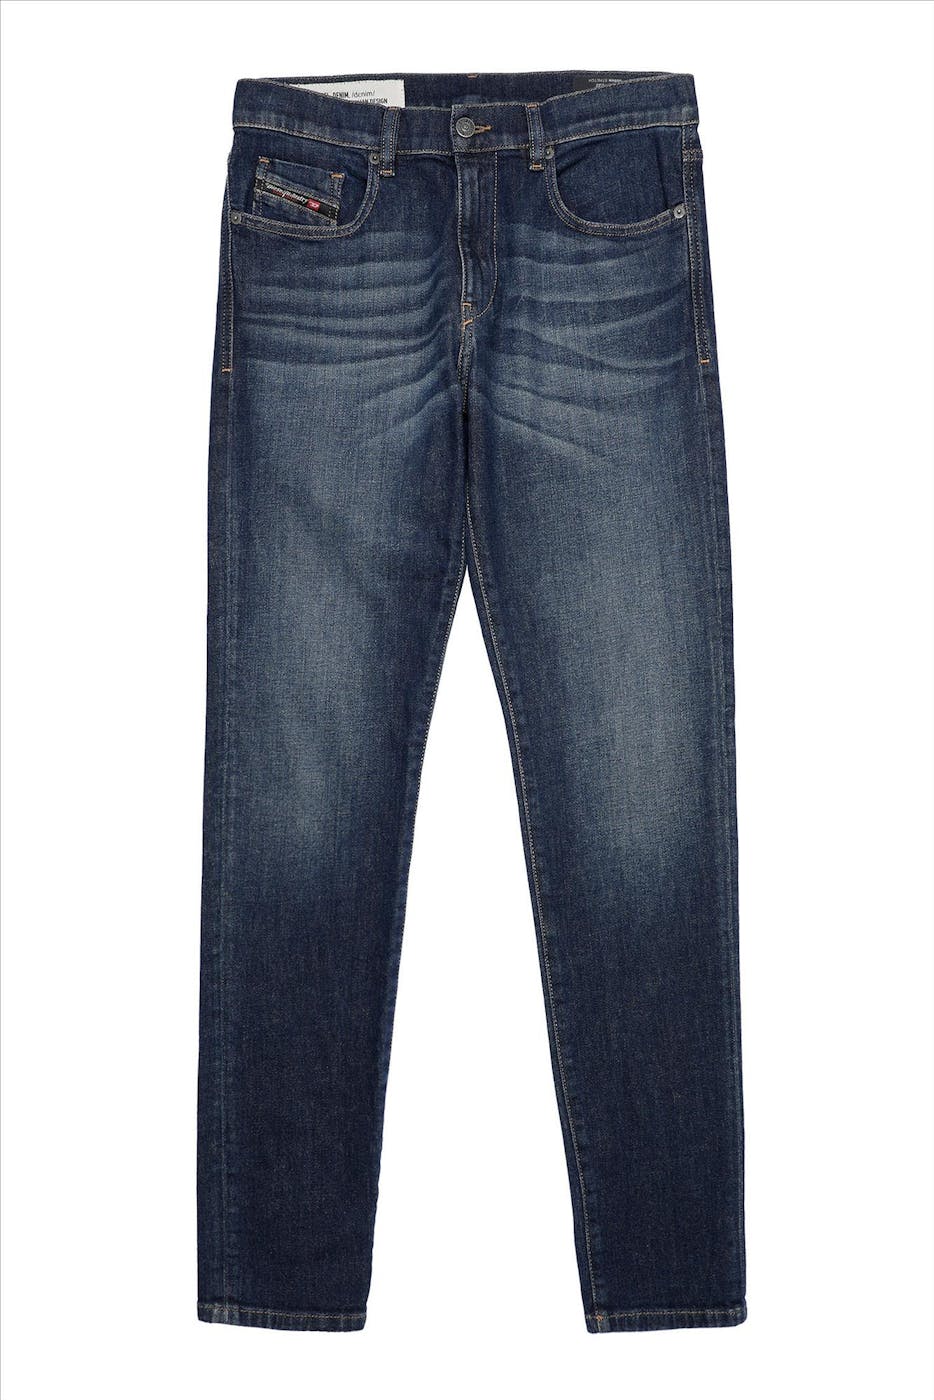 Diesel - Donkerblauwe D-Strukt slim jeans